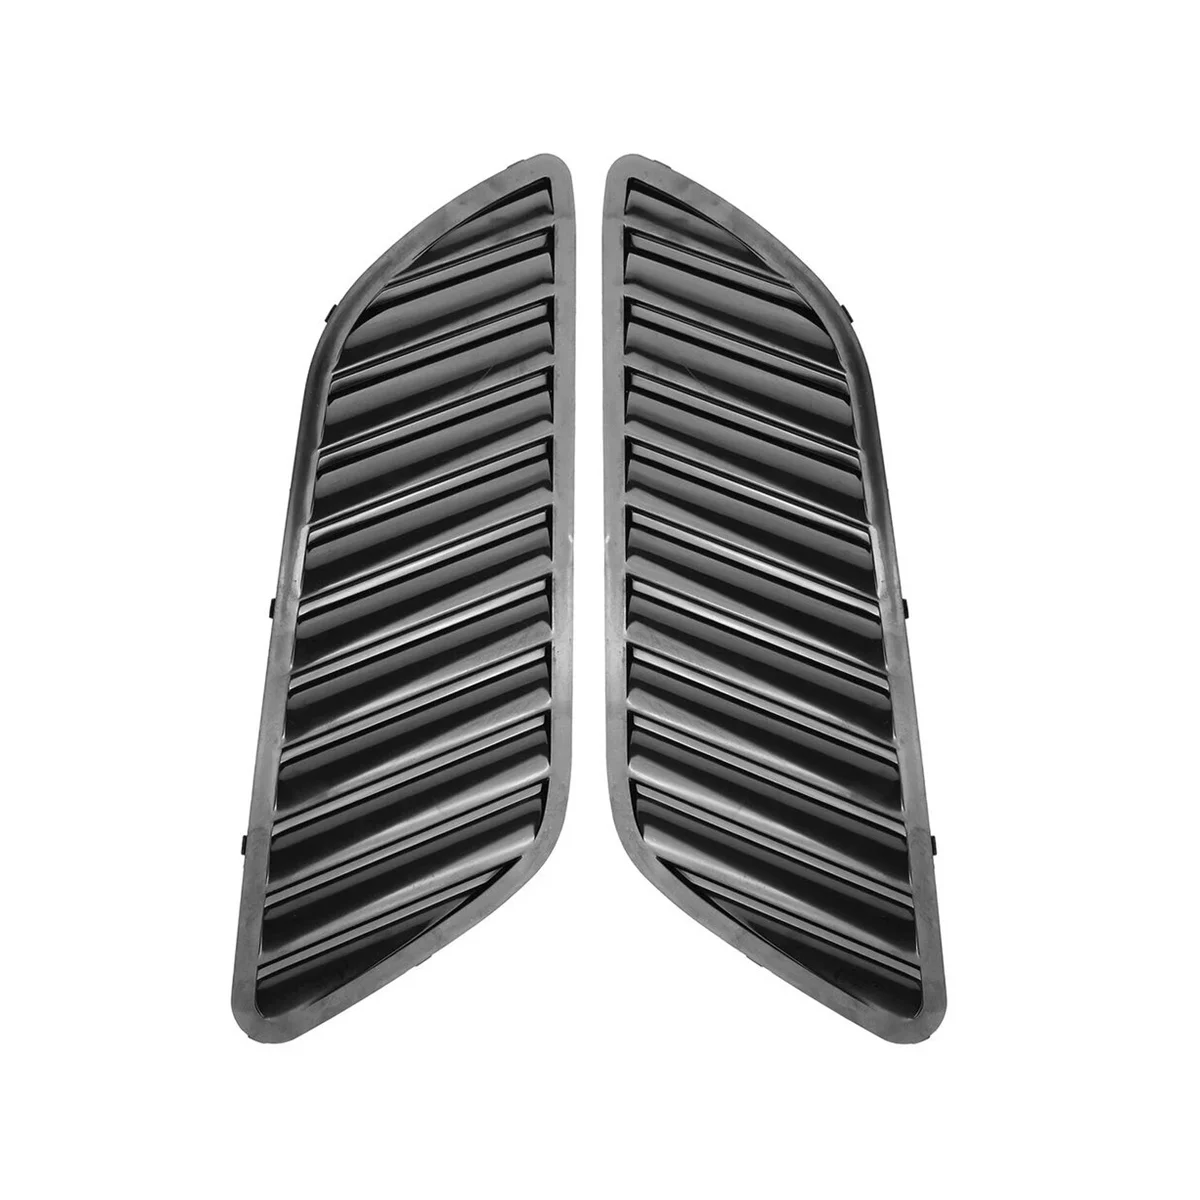 

Передняя крышка капота гриля автомобиля решетка вентиляционного отверстия решетка для BMW E90 E91 E92 F30 E46 DTM Style (черный)